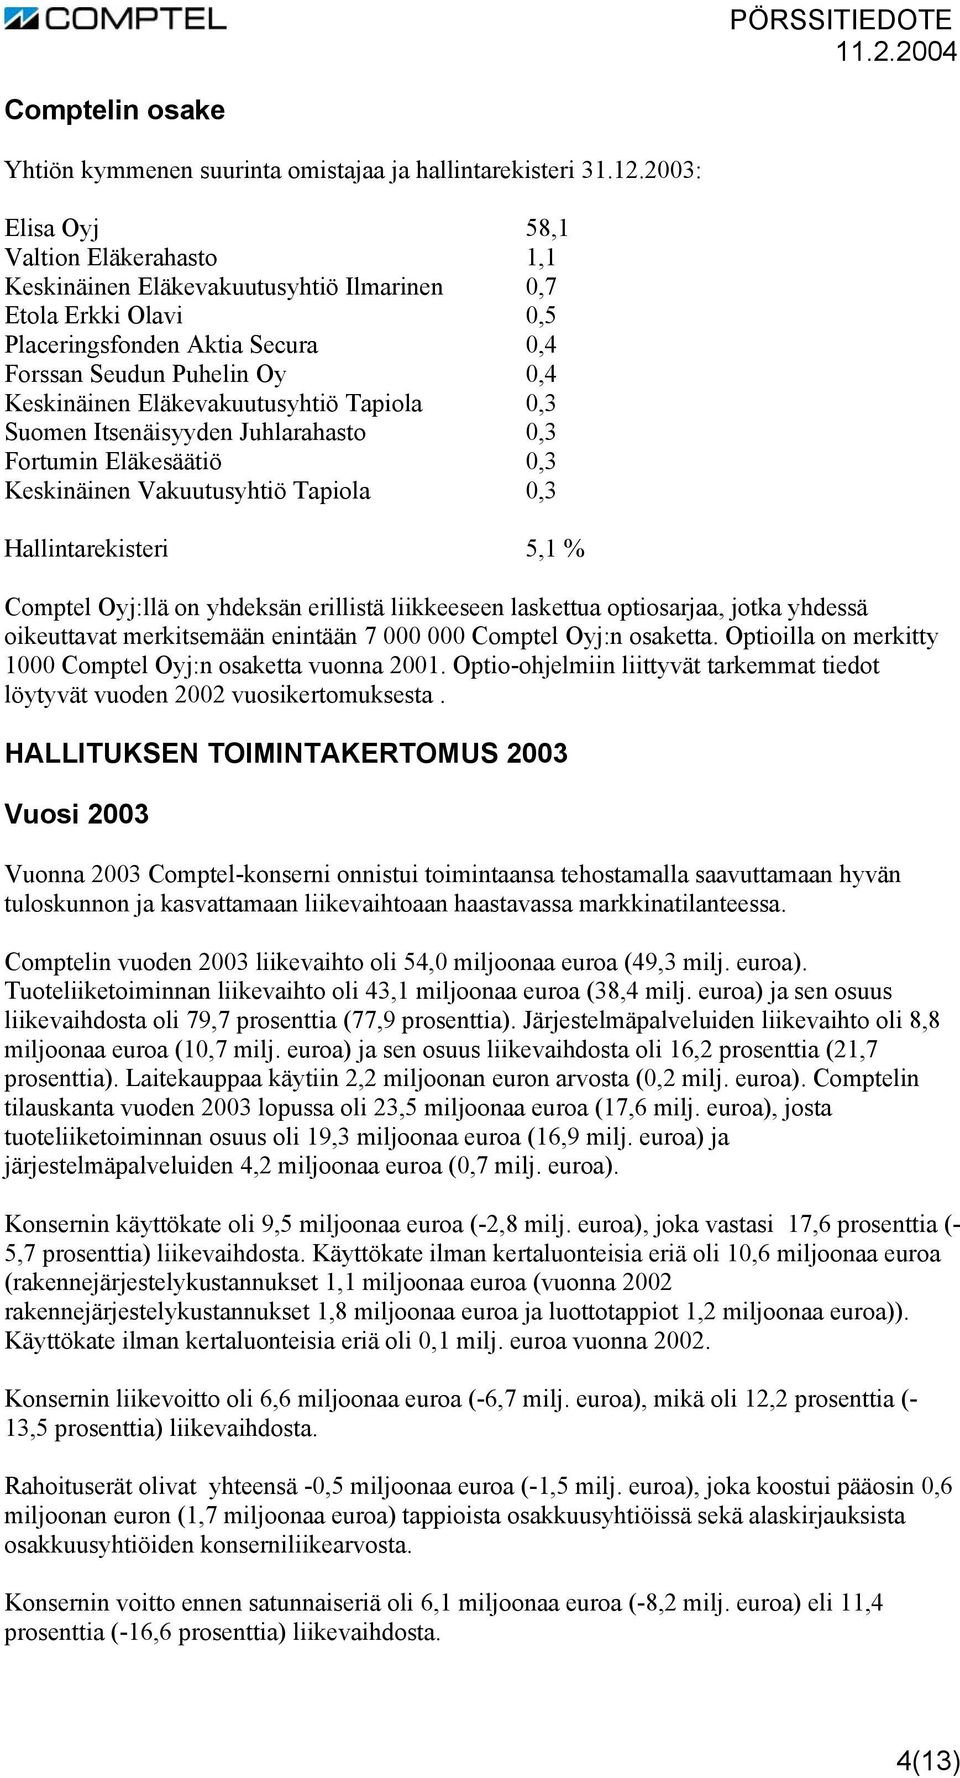 Eläkevakuutusyhtiö Tapiola 0,3 Suomen Itsenäisyyden Juhlarahasto 0,3 Fortumin Eläkesäätiö 0,3 Keskinäinen Vakuutusyhtiö Tapiola 0,3 Hallintarekisteri 5,1 % Comptel Oyj:llä on yhdeksän erillistä